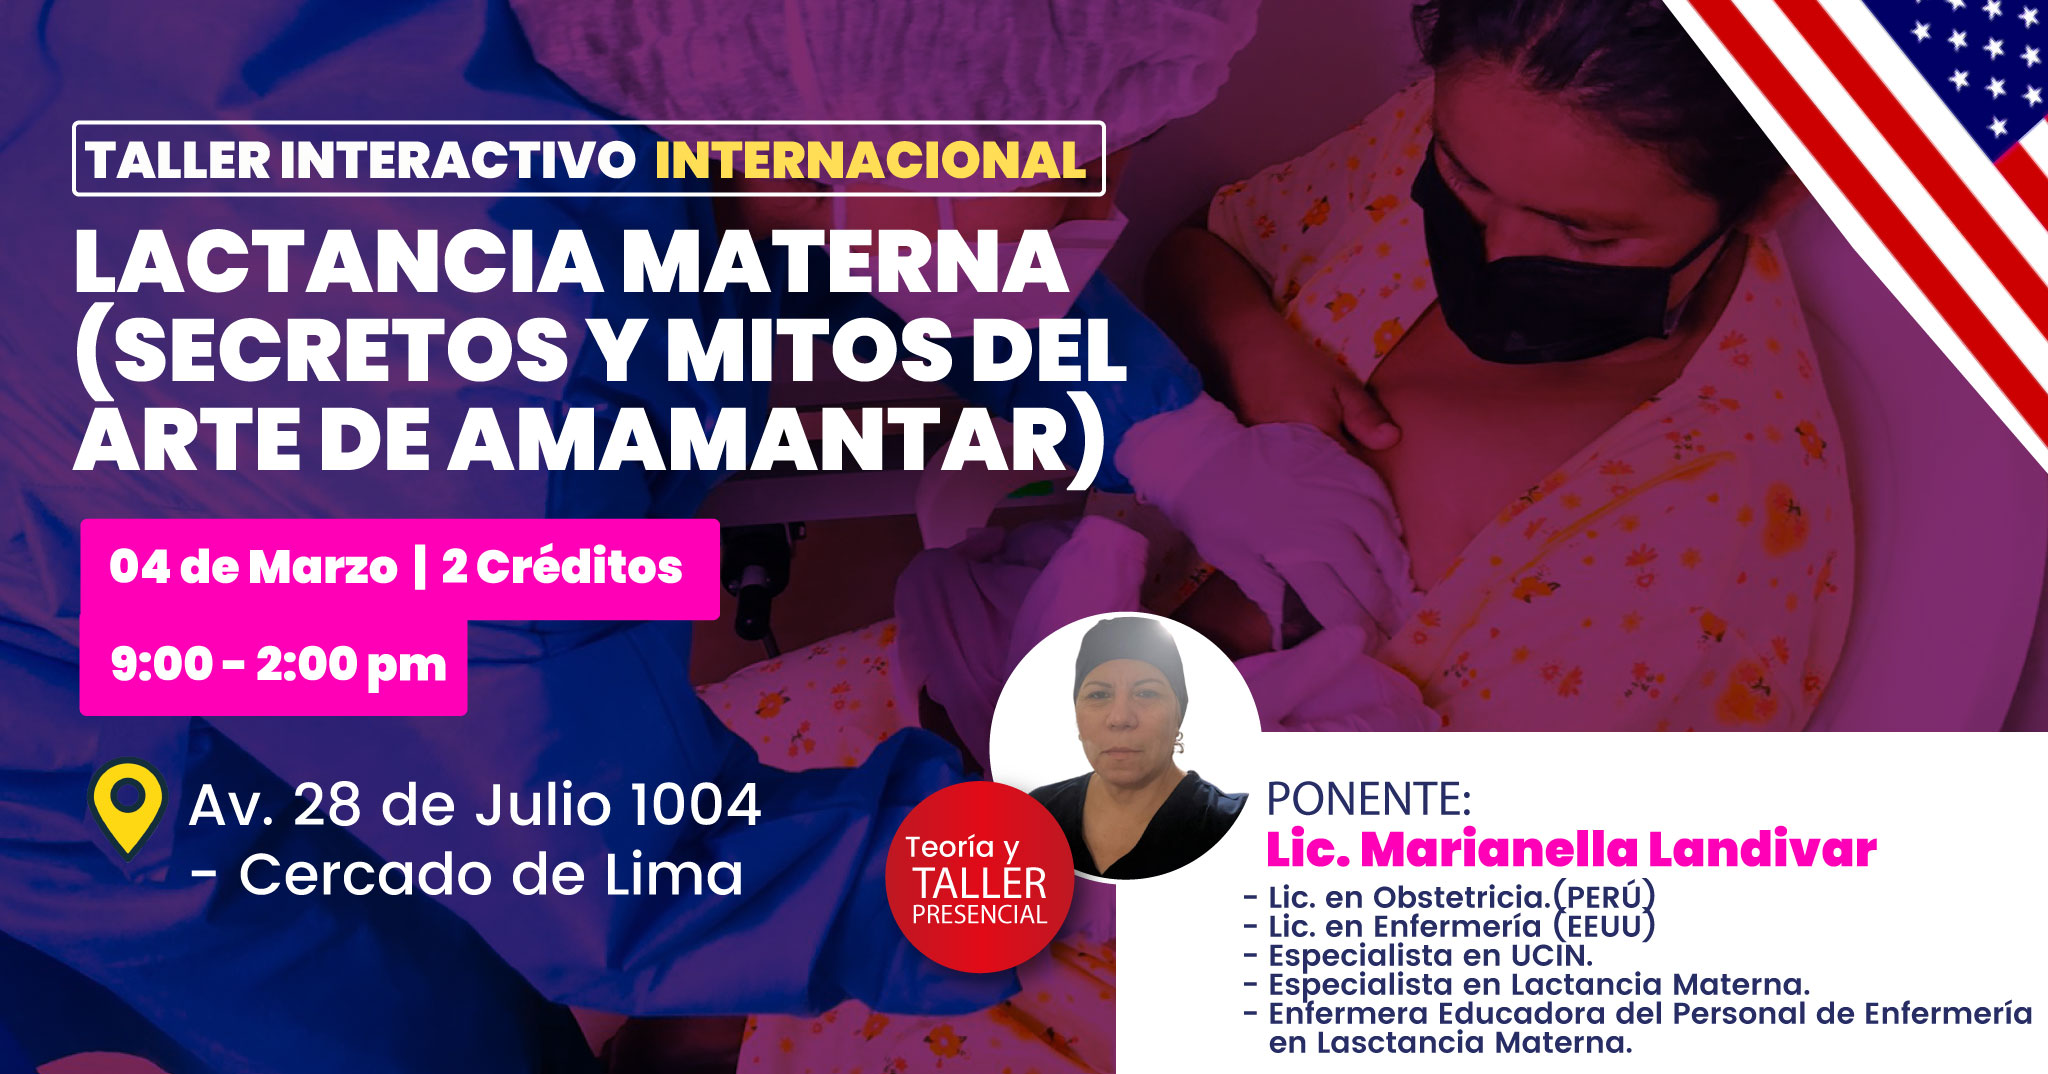 TALLER INTERACTIVO INTERNACIONAL LACTANCIA MATERNA (SECRETOS Y MITOS DEL ARTE DE AMAMANTAR)